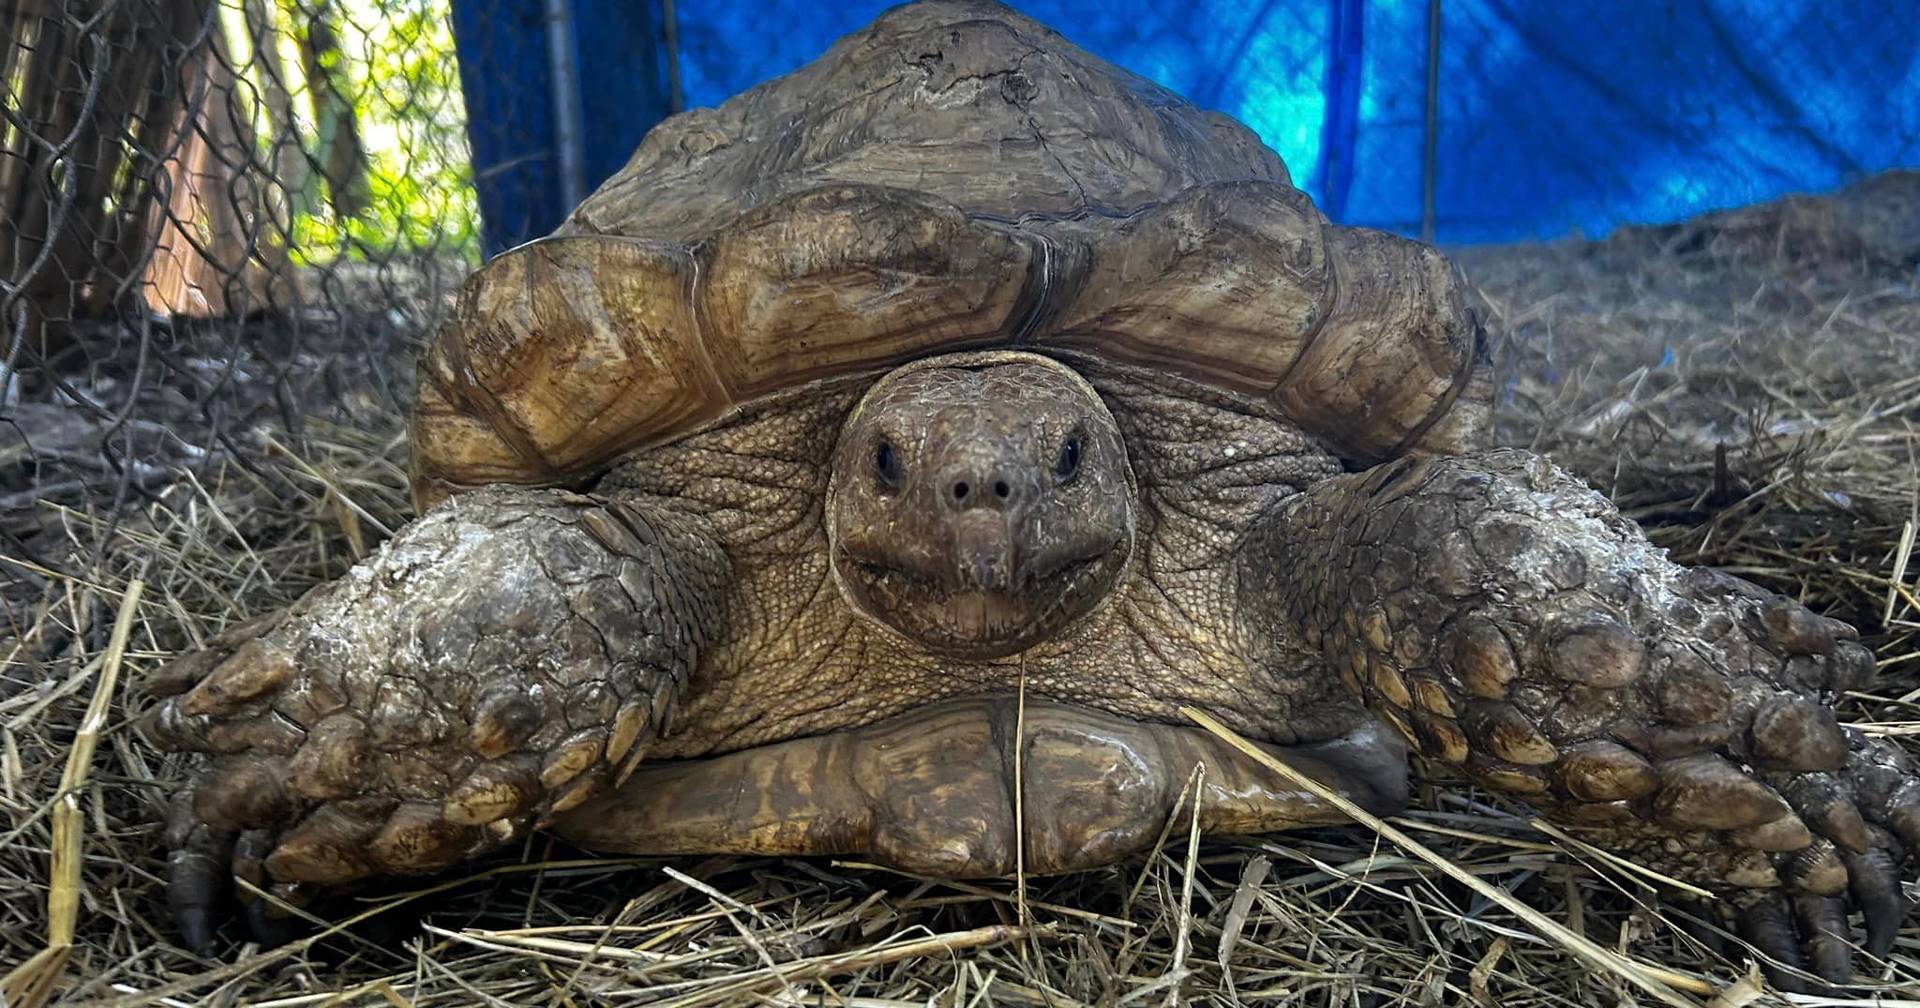 “Un final feliz”: tres años después, la tortuga encuentra a su dueño